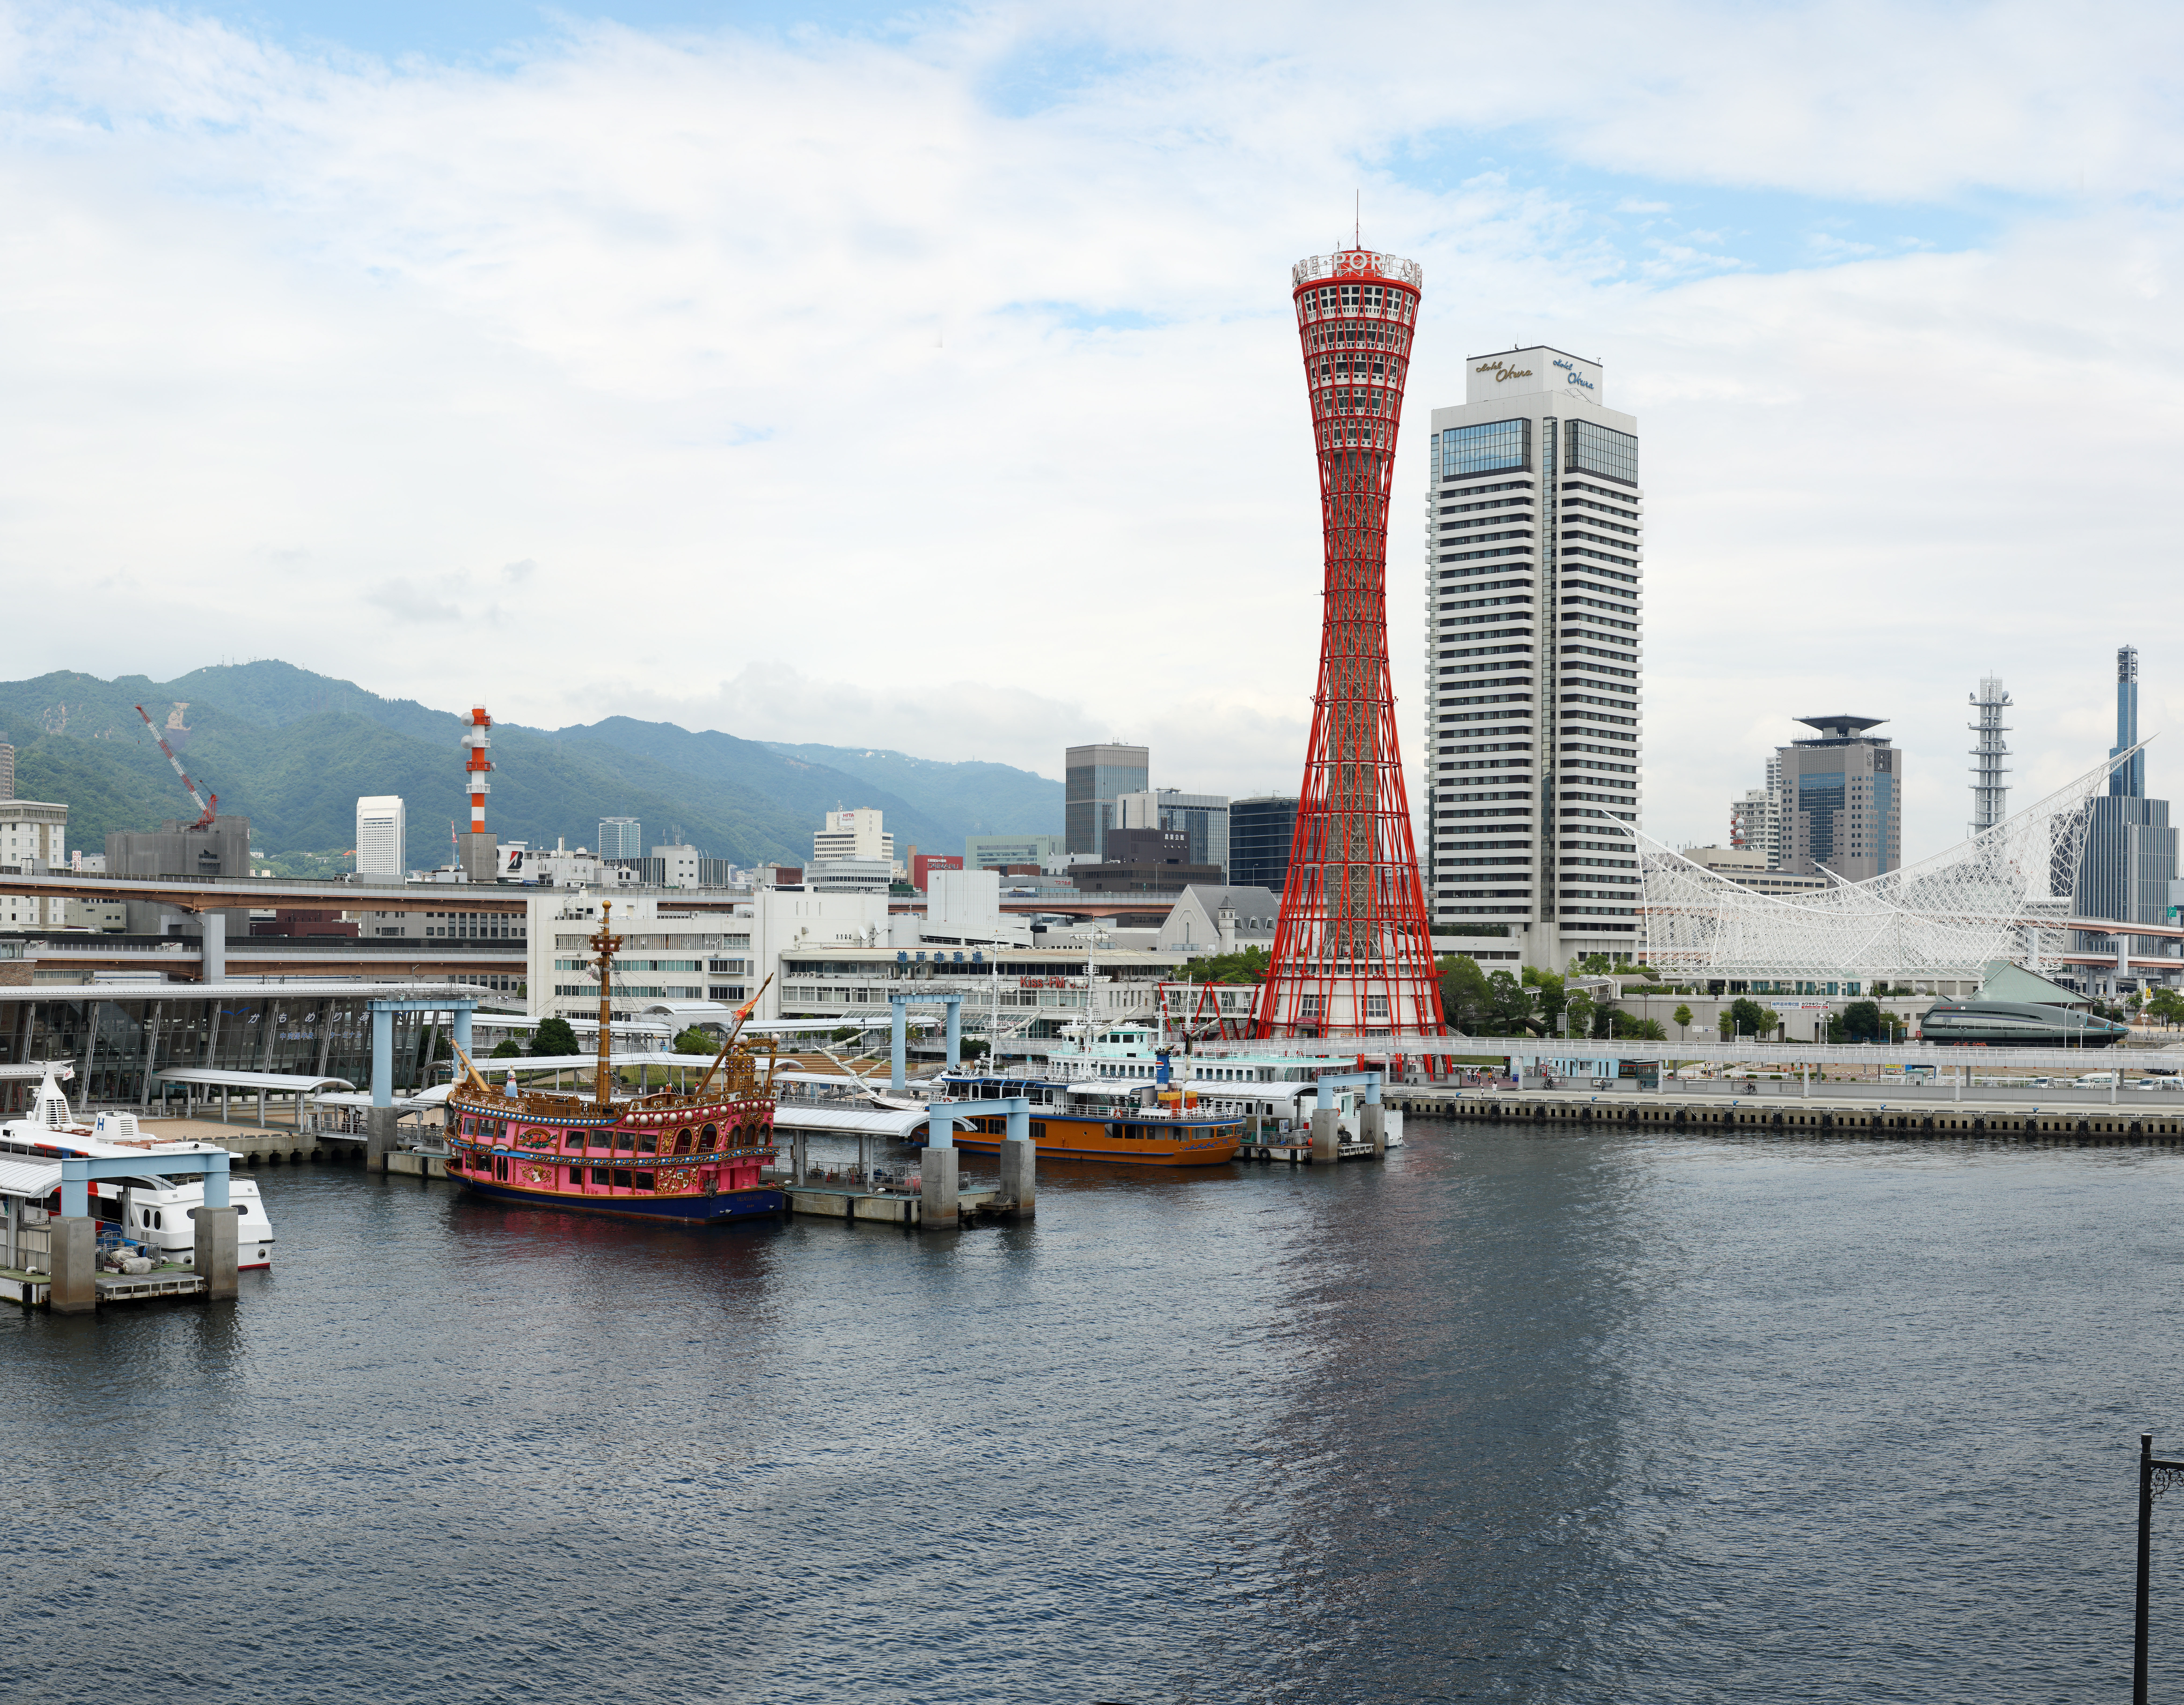 Foto, materiell, befreit, Landschaft, Bild, hat Foto auf Lager,Kobe-Hafen Schwung des Auges, Hafen, Vergngensboot, Gewerbe, Touristenattraktion